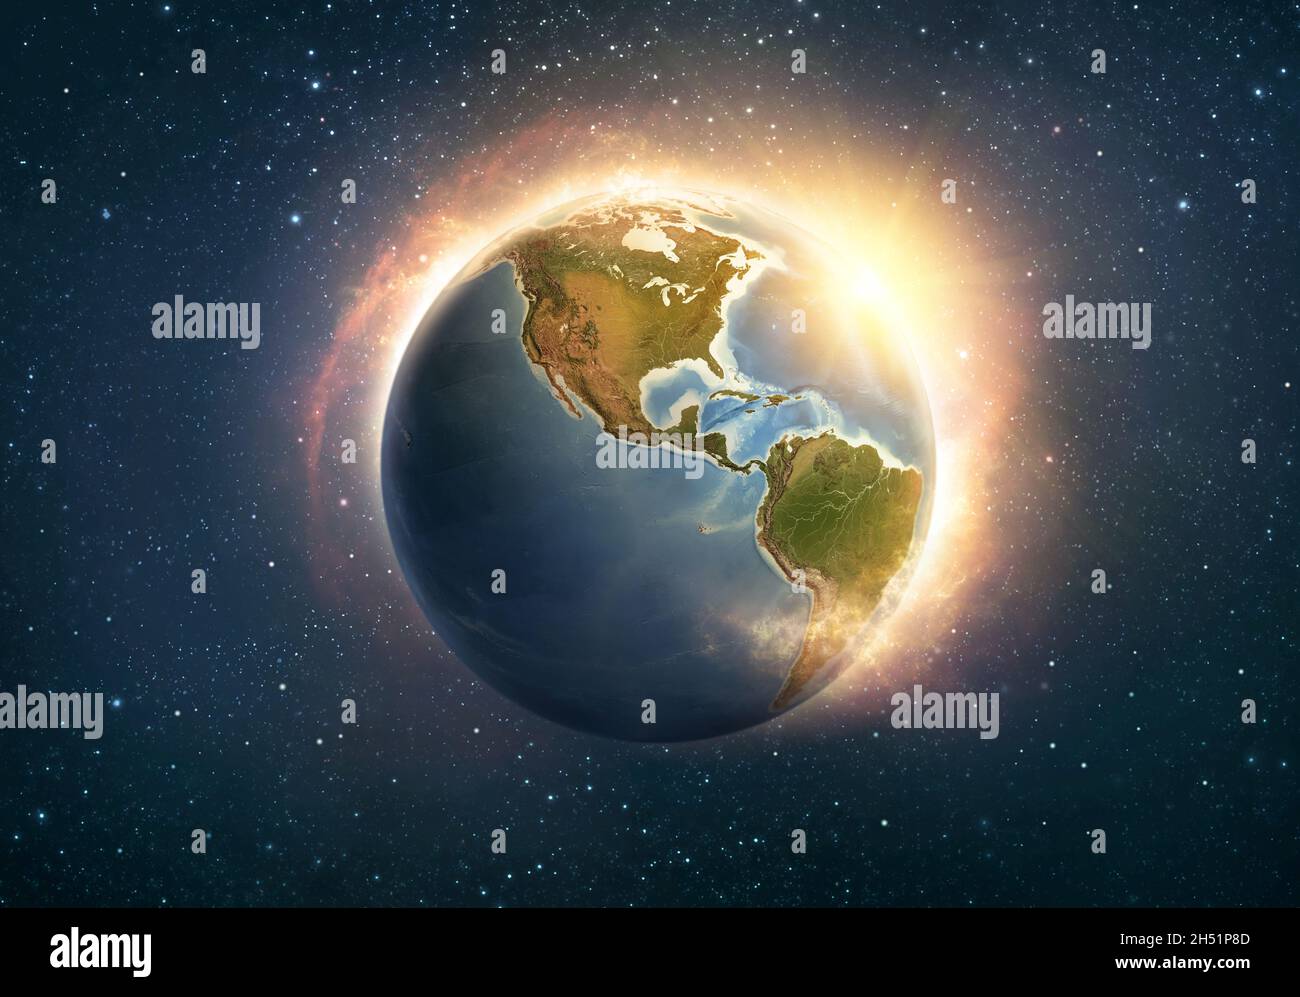 Globale Erwärmung, Klimawandel, weltweite Katastrophe auf dem Planeten Erde, Nord- und Südamerika. 3D-Illustration - Elemente dieses Bildes, die von NAS eingerichtet wurden Stockfoto